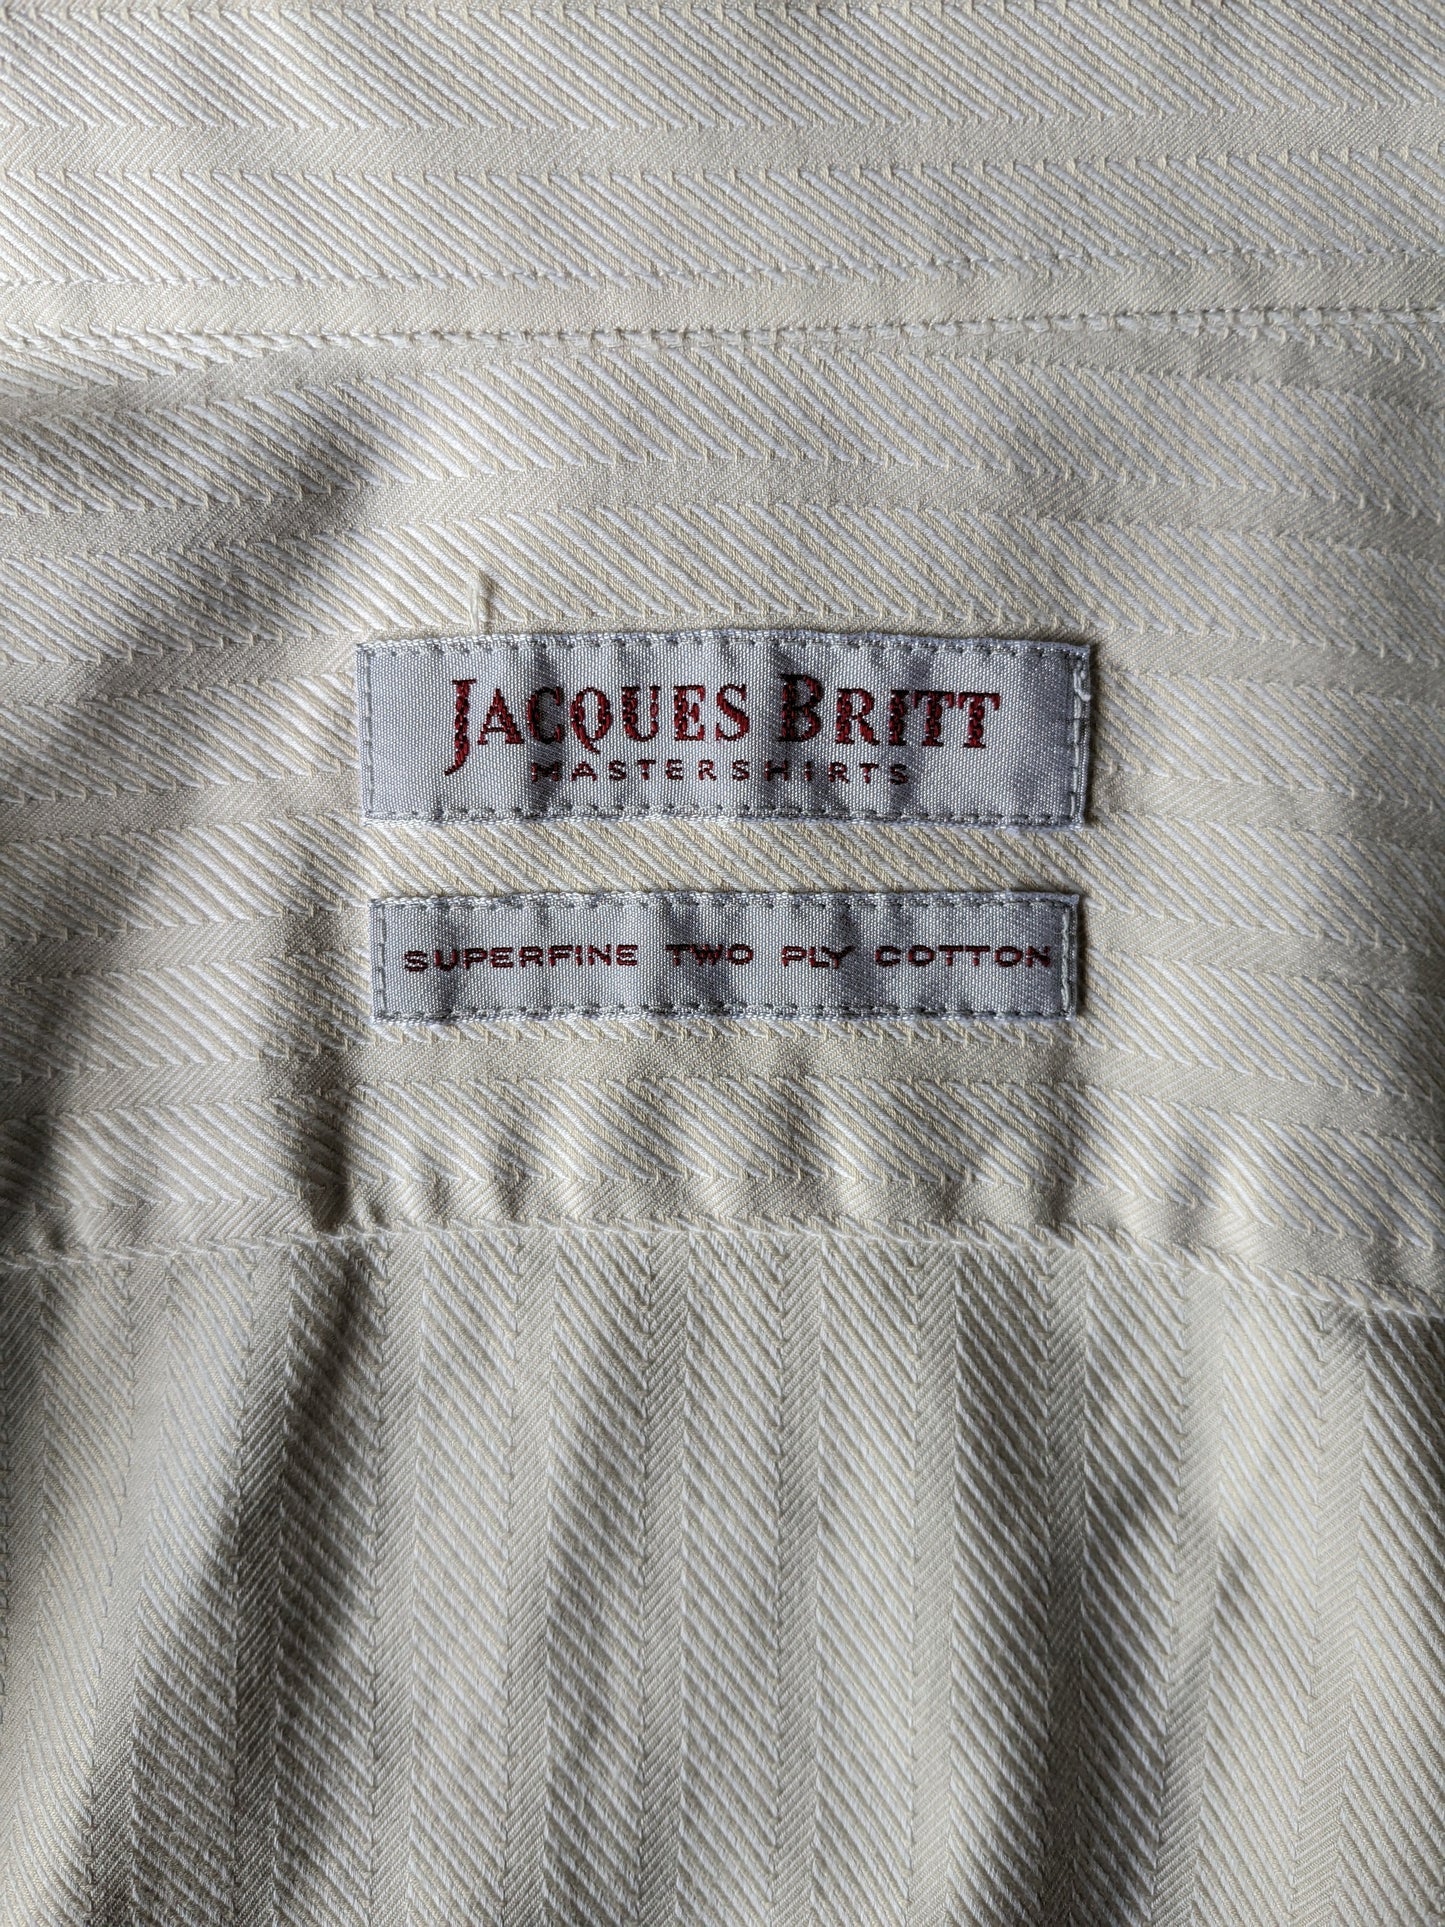 Chemise vintage Jacques Britt. Motif rayé beige. Taille xl.